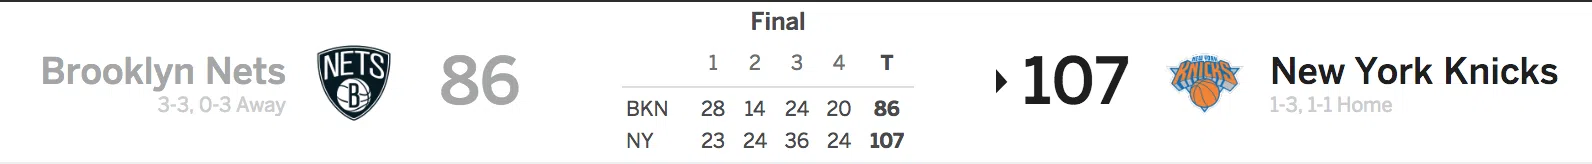 Nets vs Knicks 10/27/17 Score